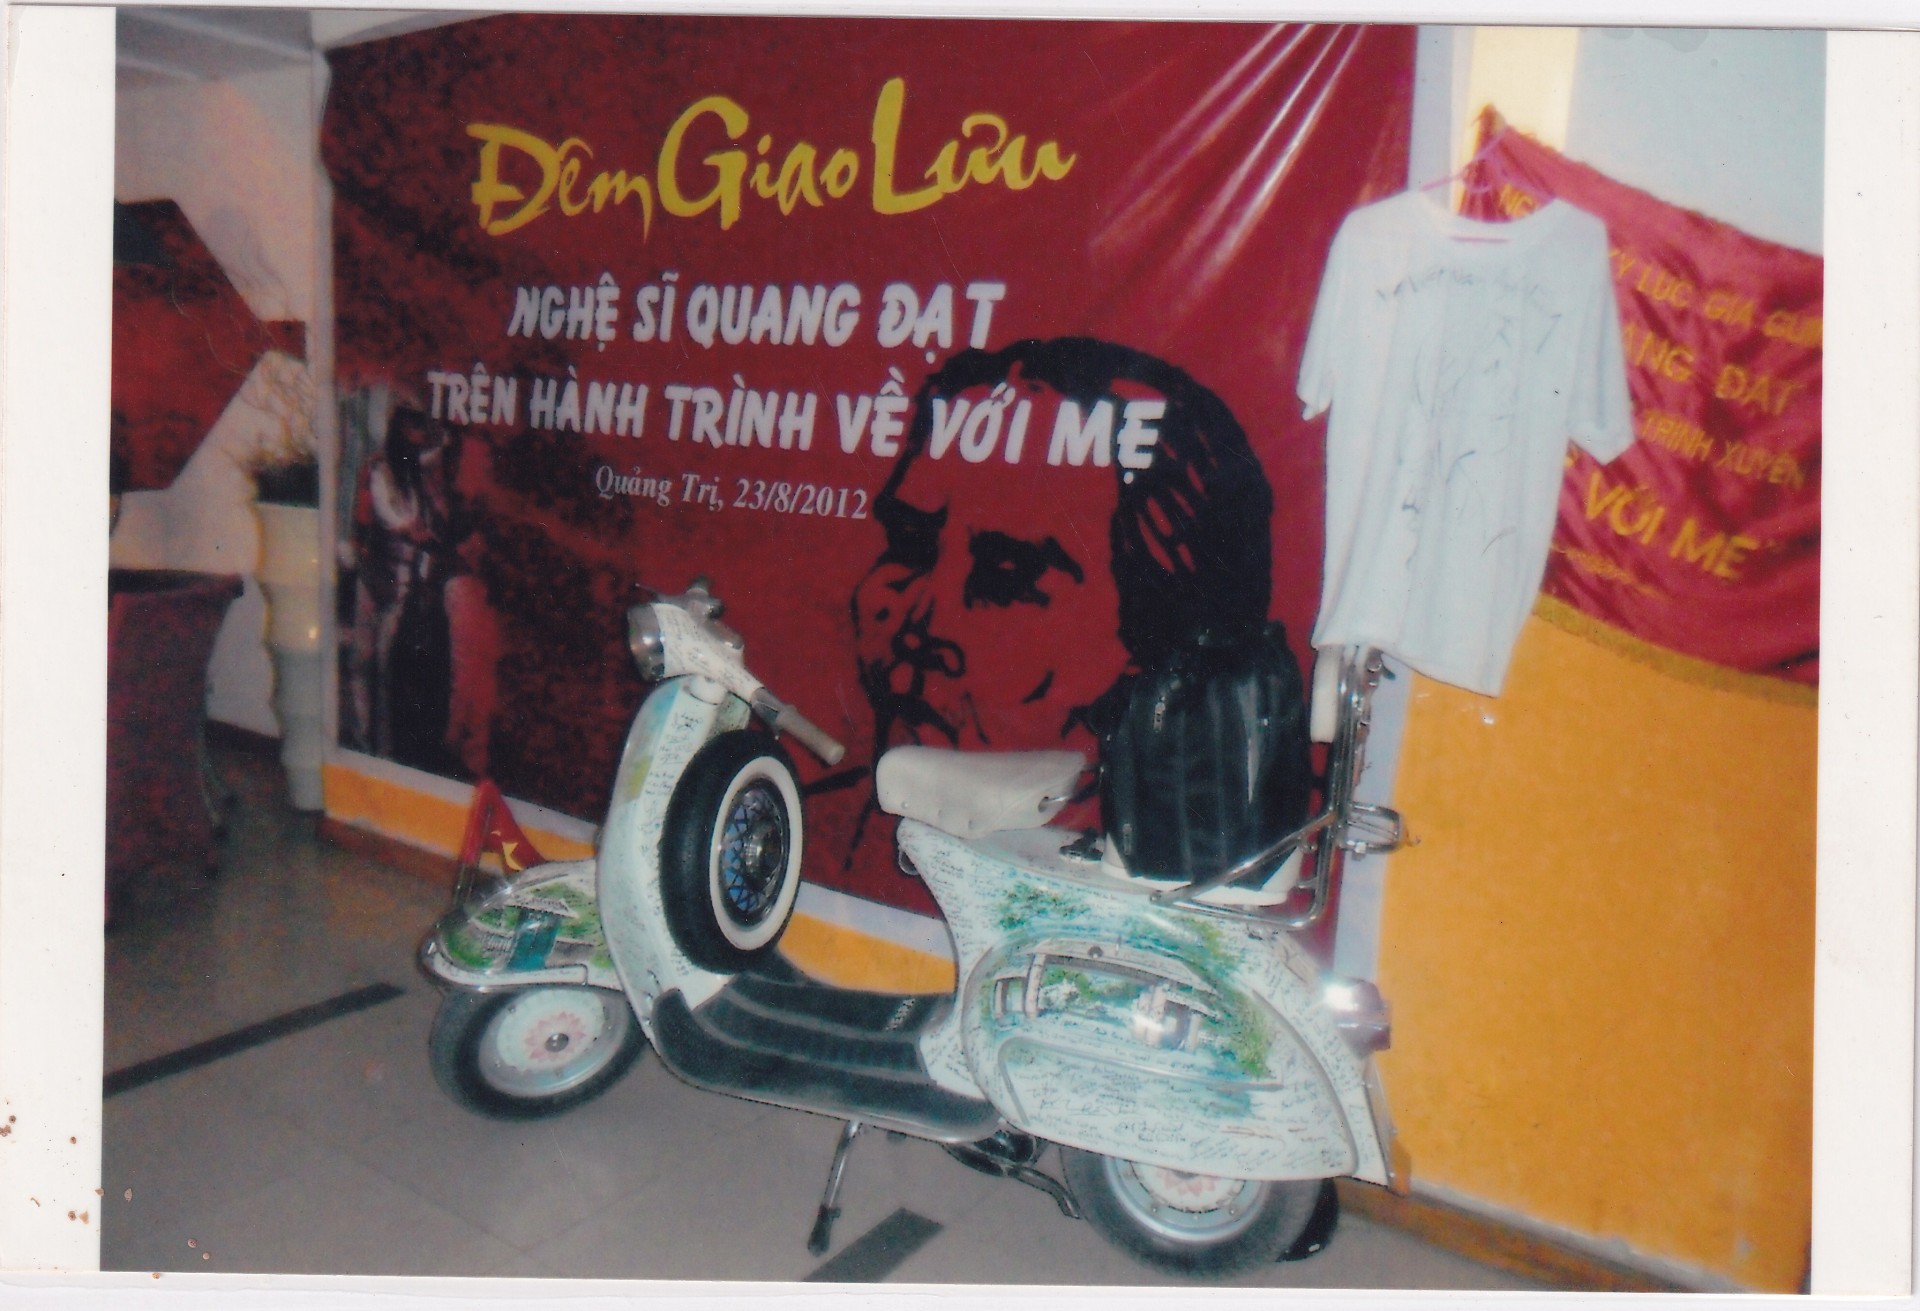 Chiếc Vespa cổ lưu kỷ niệm nhiều nhà báo và dự định lớn của nghệ sĩ Quang Đạt